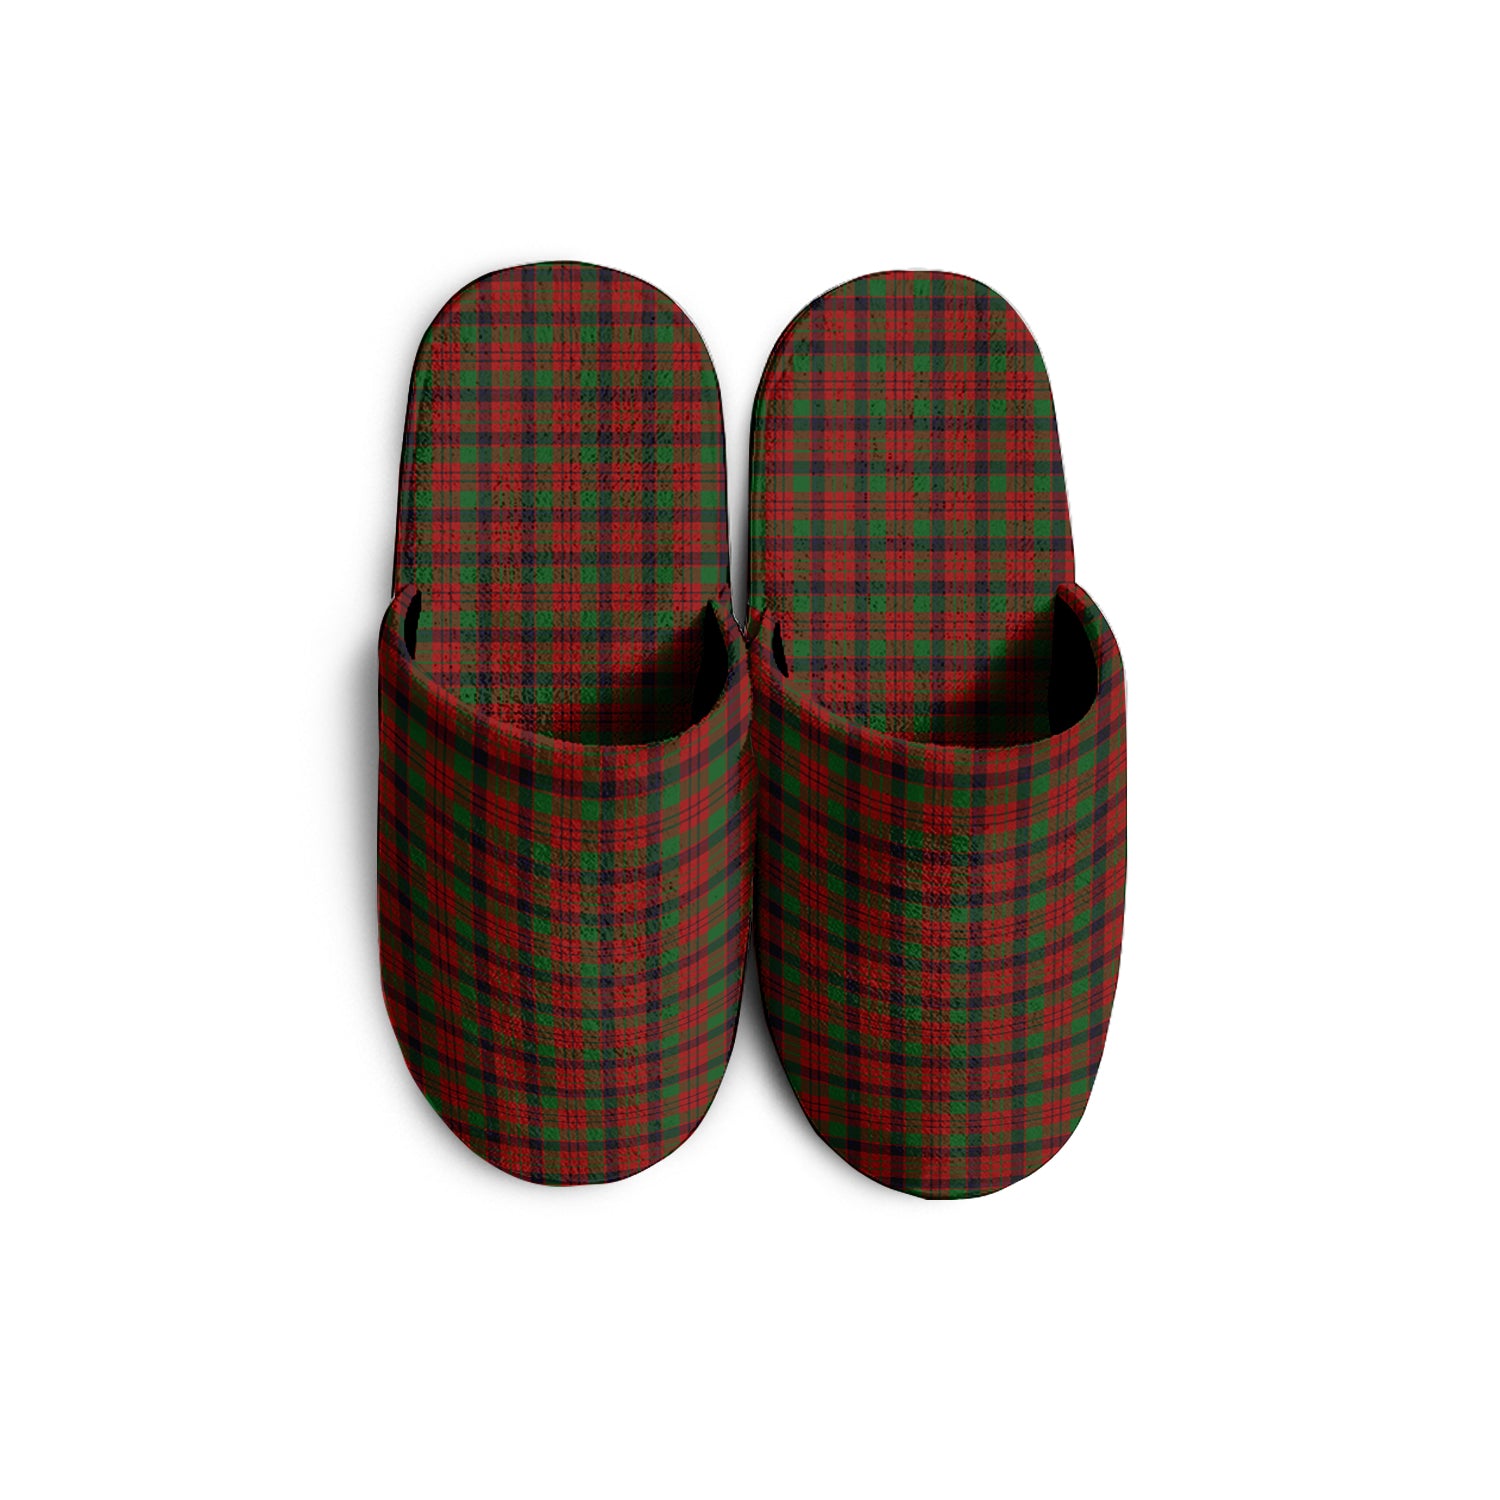 macnicol-tartan-slippers-plaid-slippers